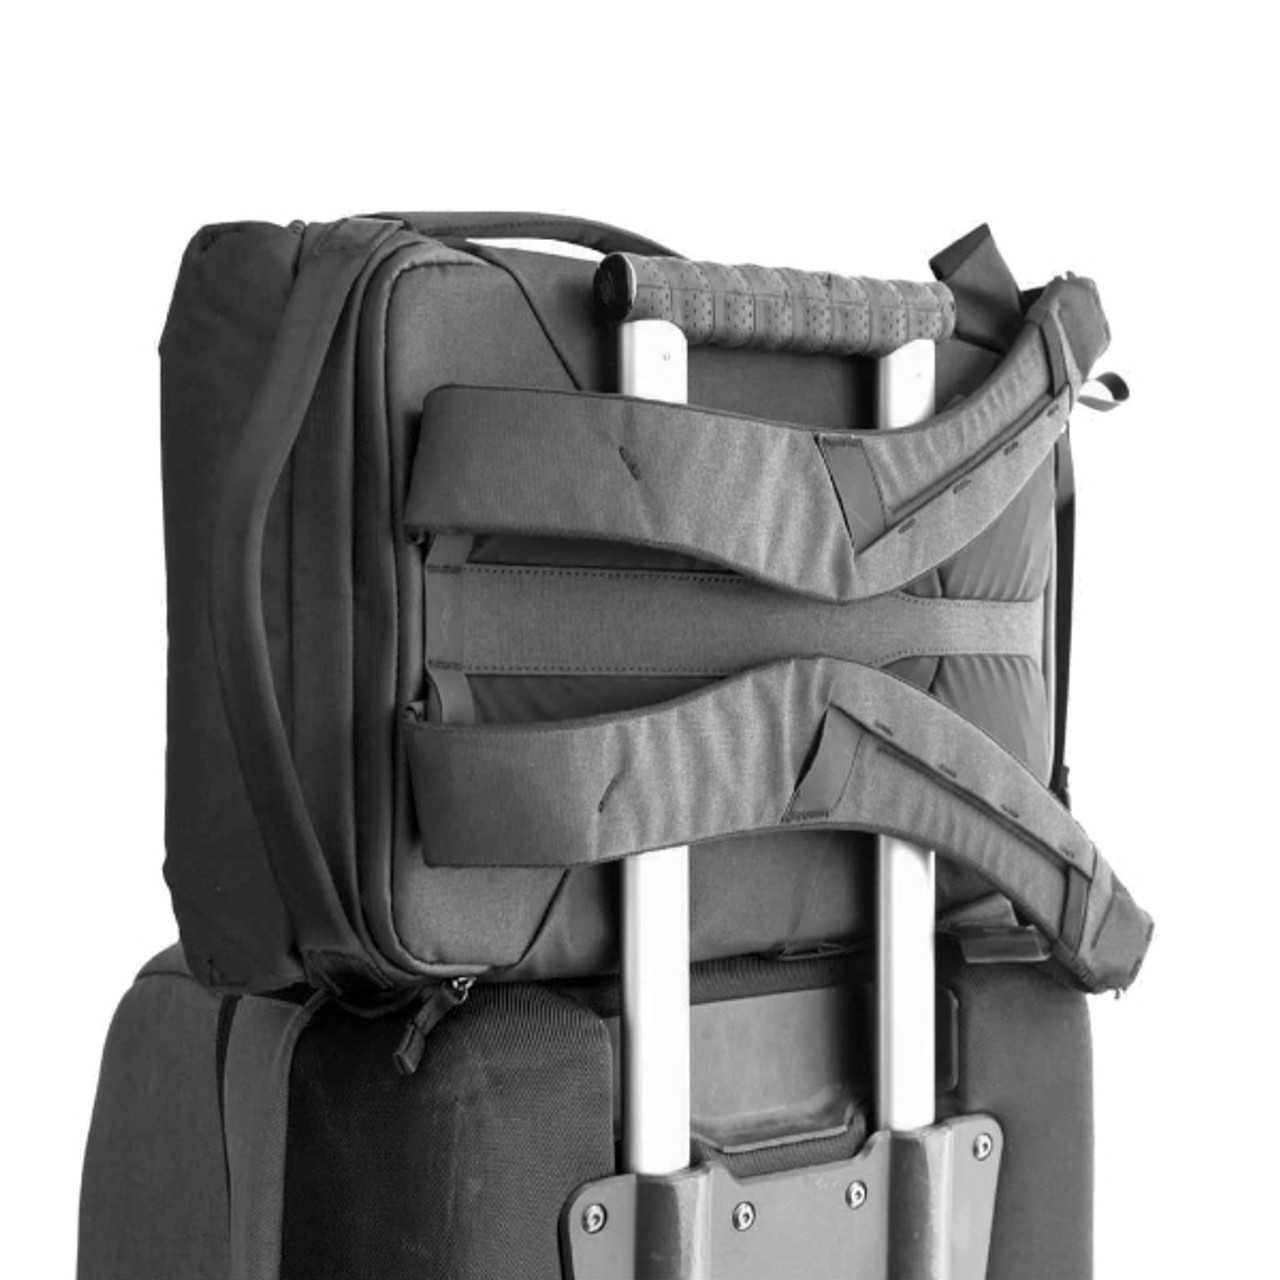 Peak Design Everyday Backpack 20L v2 - Black